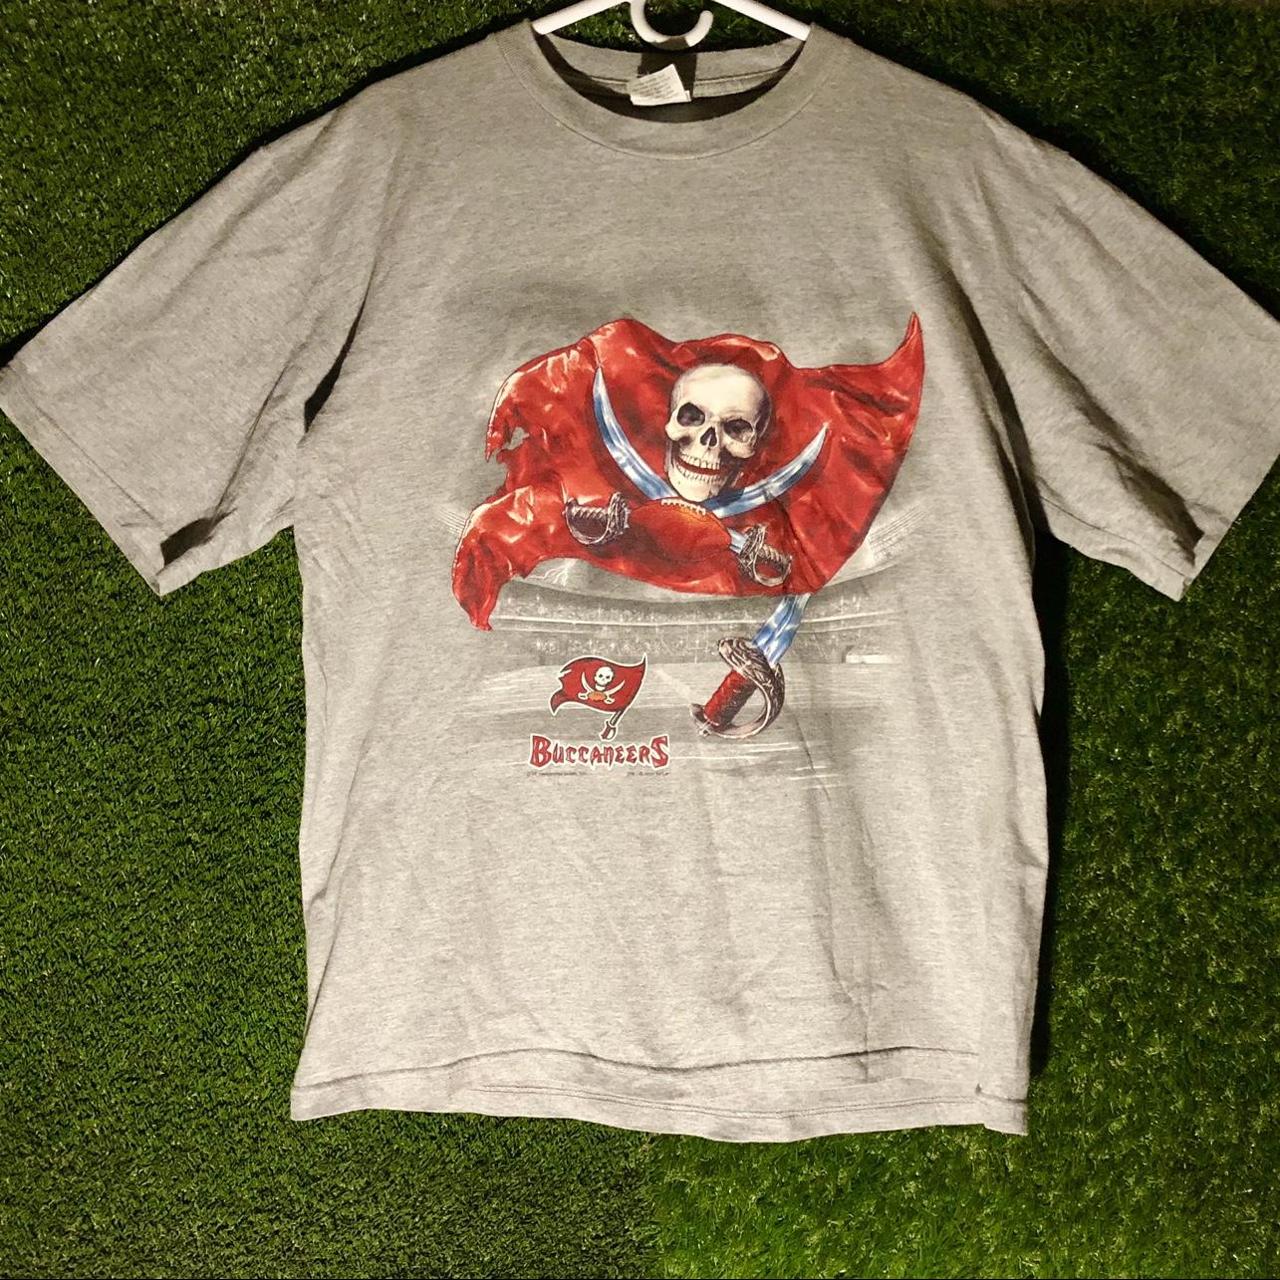 Tampa Bay T Shirts, Vintage Sports Shirts